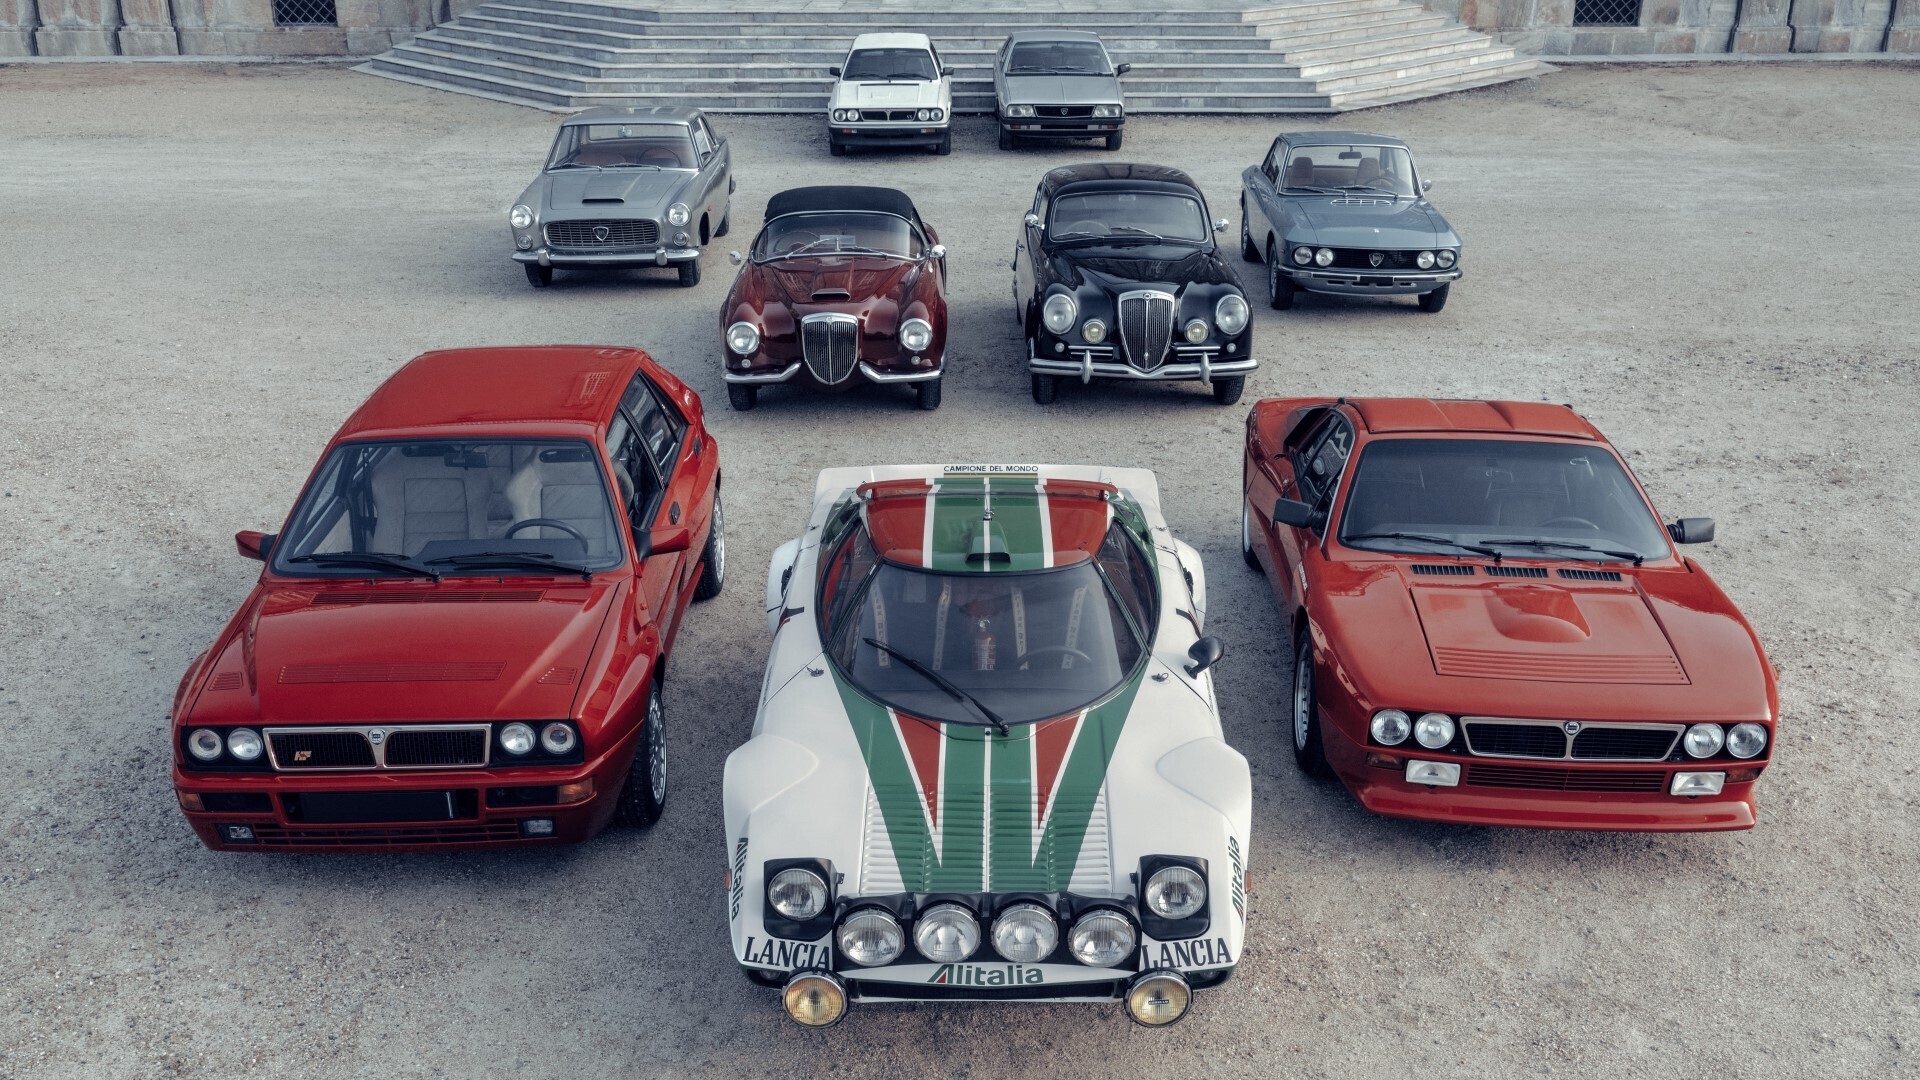 Lancia: Η Αναγέννηση ξεκινά στις 28 Νοεμβρίου